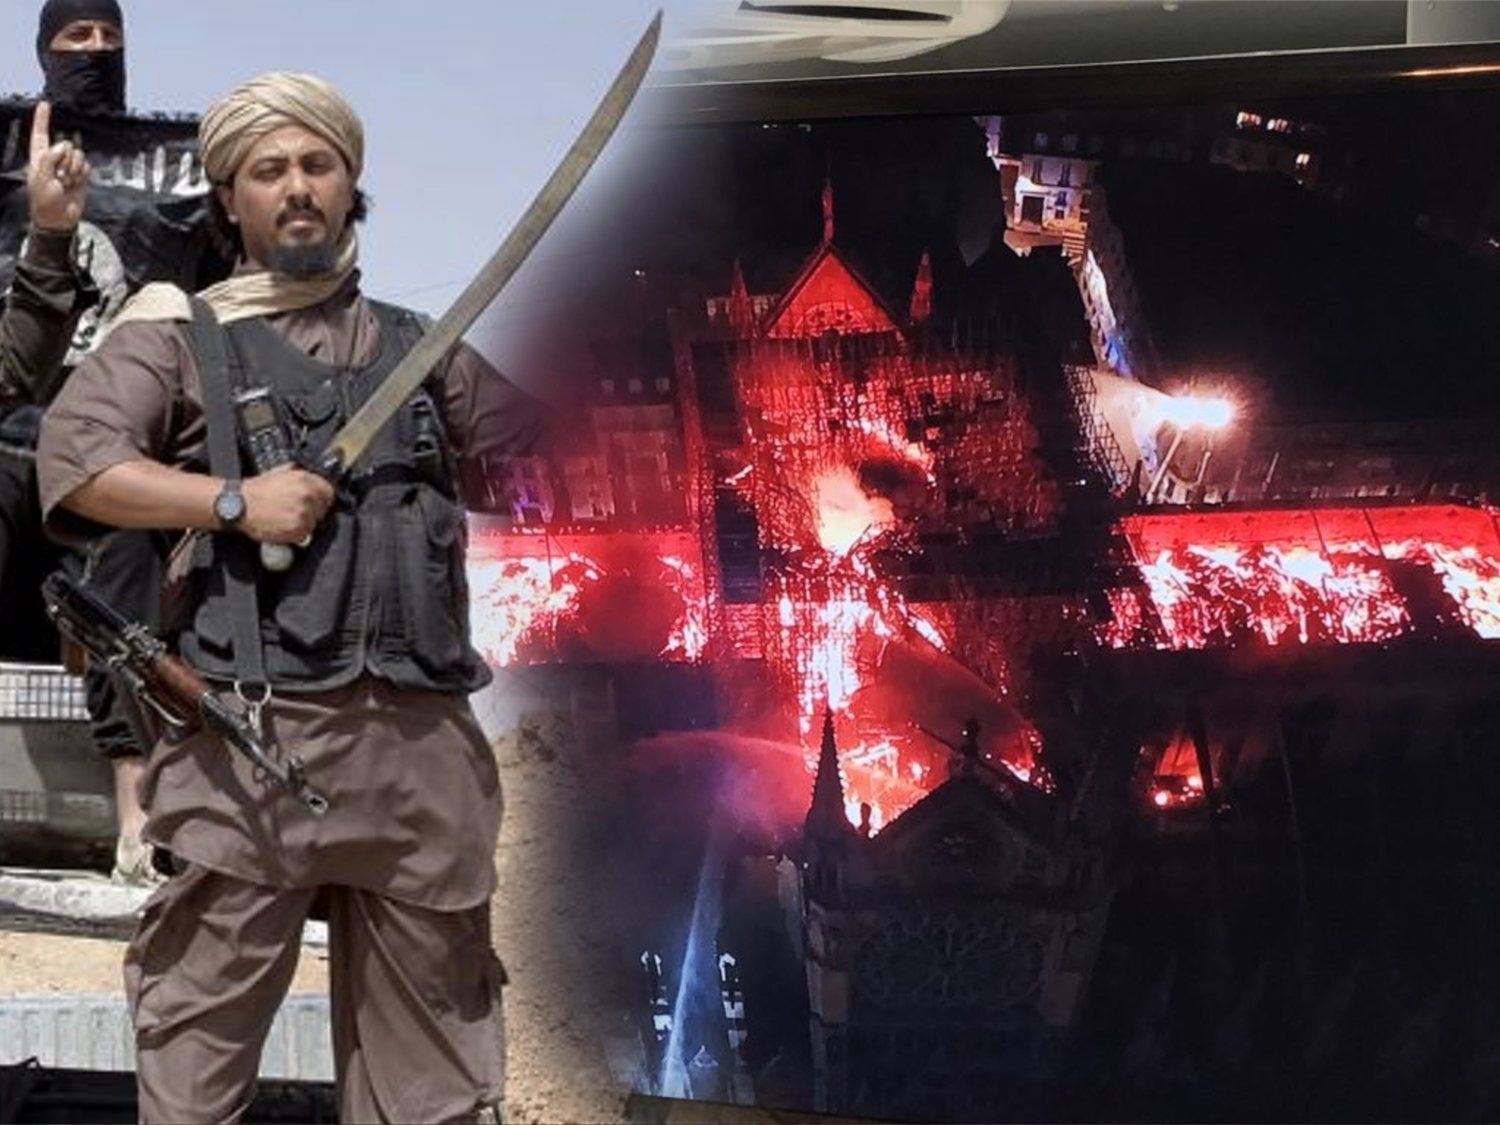 El Daesh celebra el incendio de Notre Dame como "un buen presagio" y "castigo de Alá"